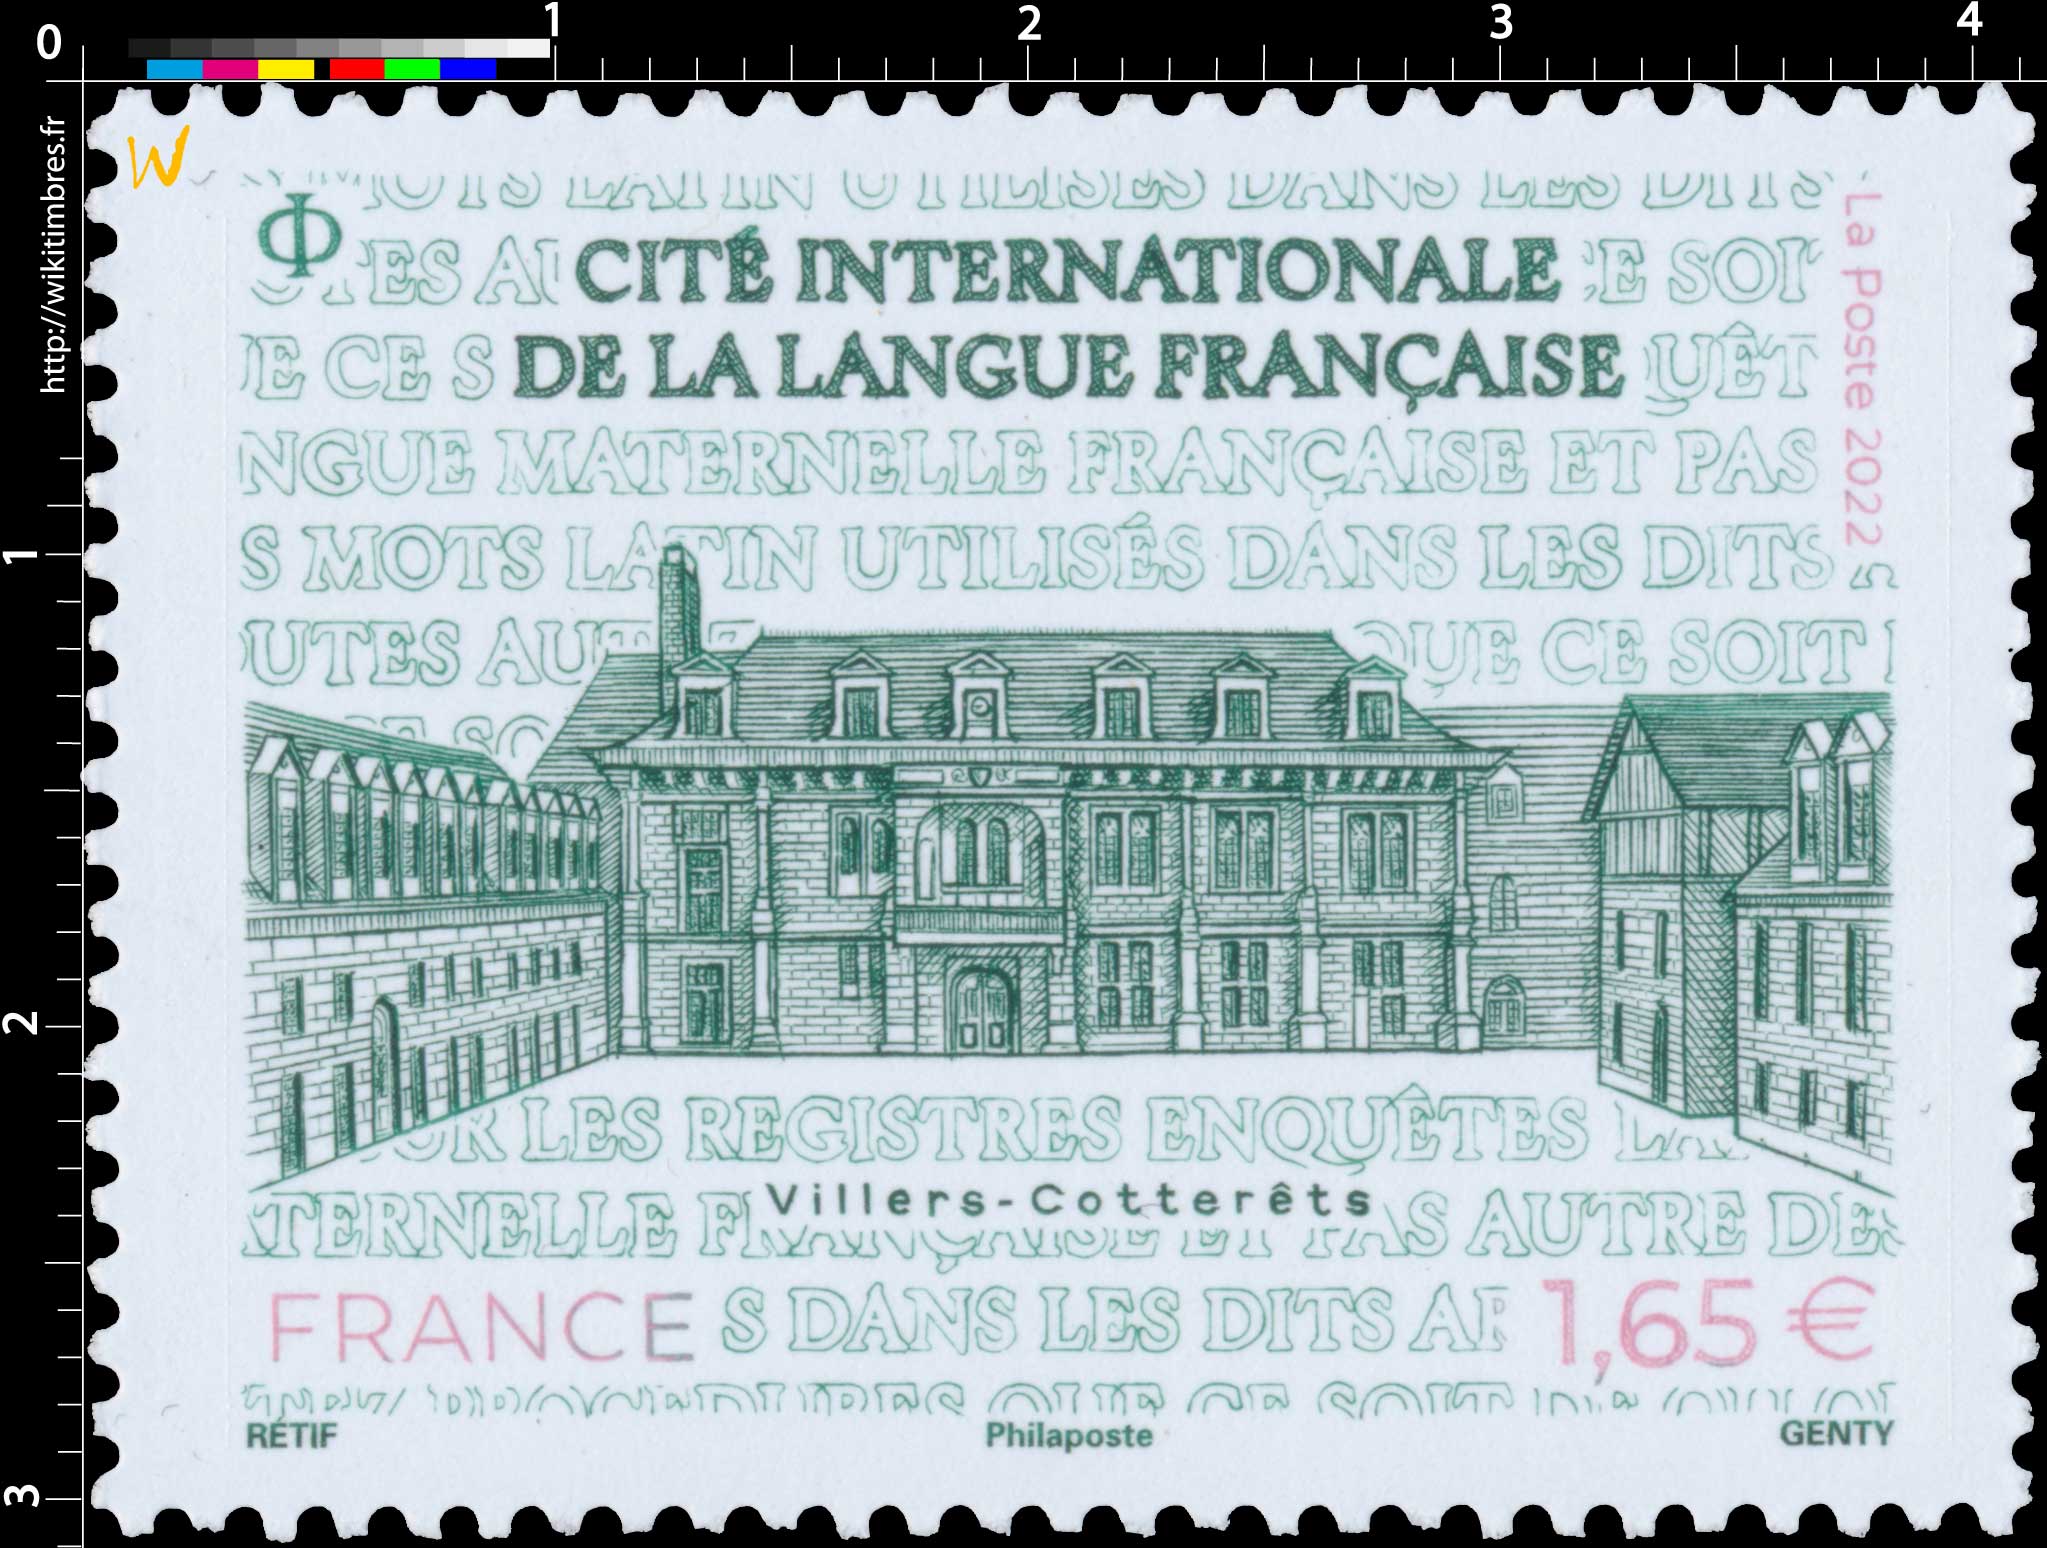 2022 Cité internationale de la Langue française Villers-Cotterêts